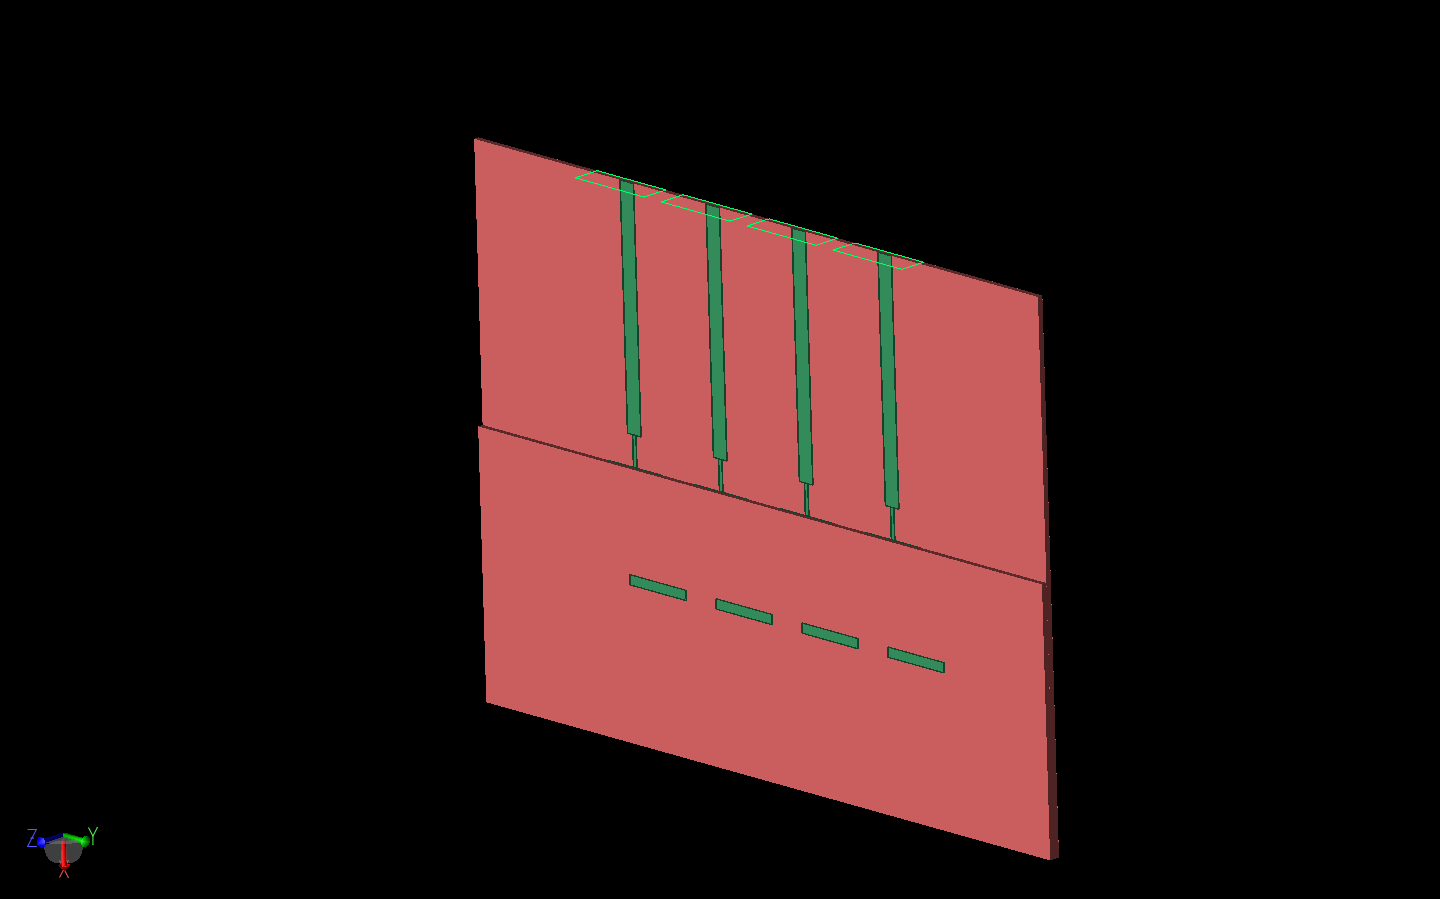 图 2：天线阵列的三维图，顶部衬底层的边缘在贴片上更加明显。阵列顶部可见四个节点波导馈电端口。